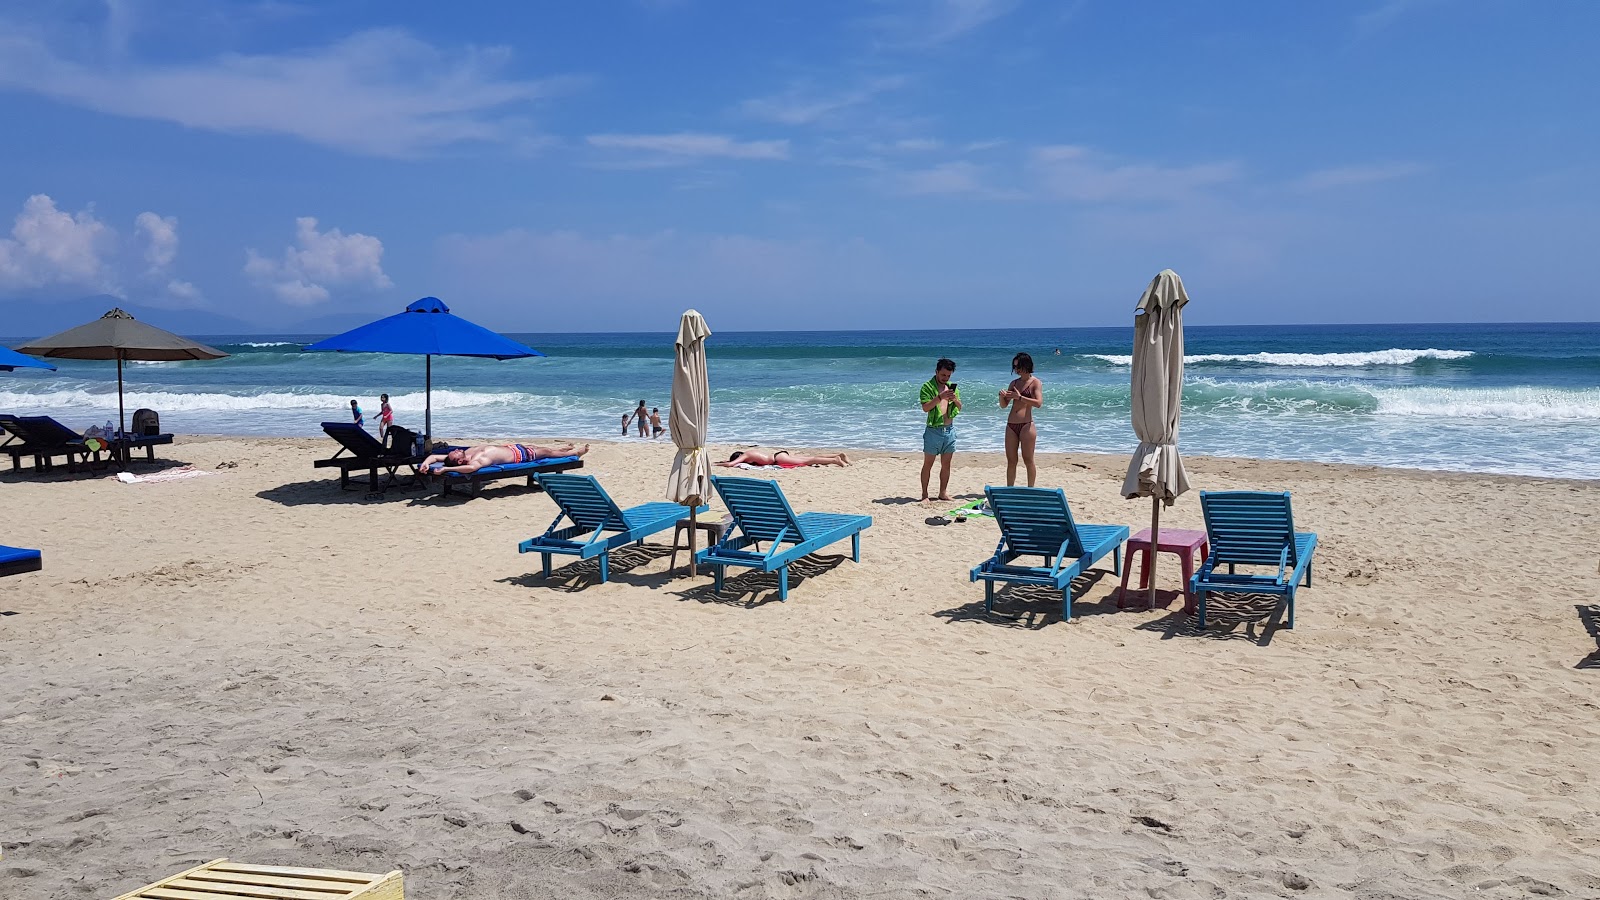 An Bang Plajı'in fotoğrafı parlak ince kum yüzey ile